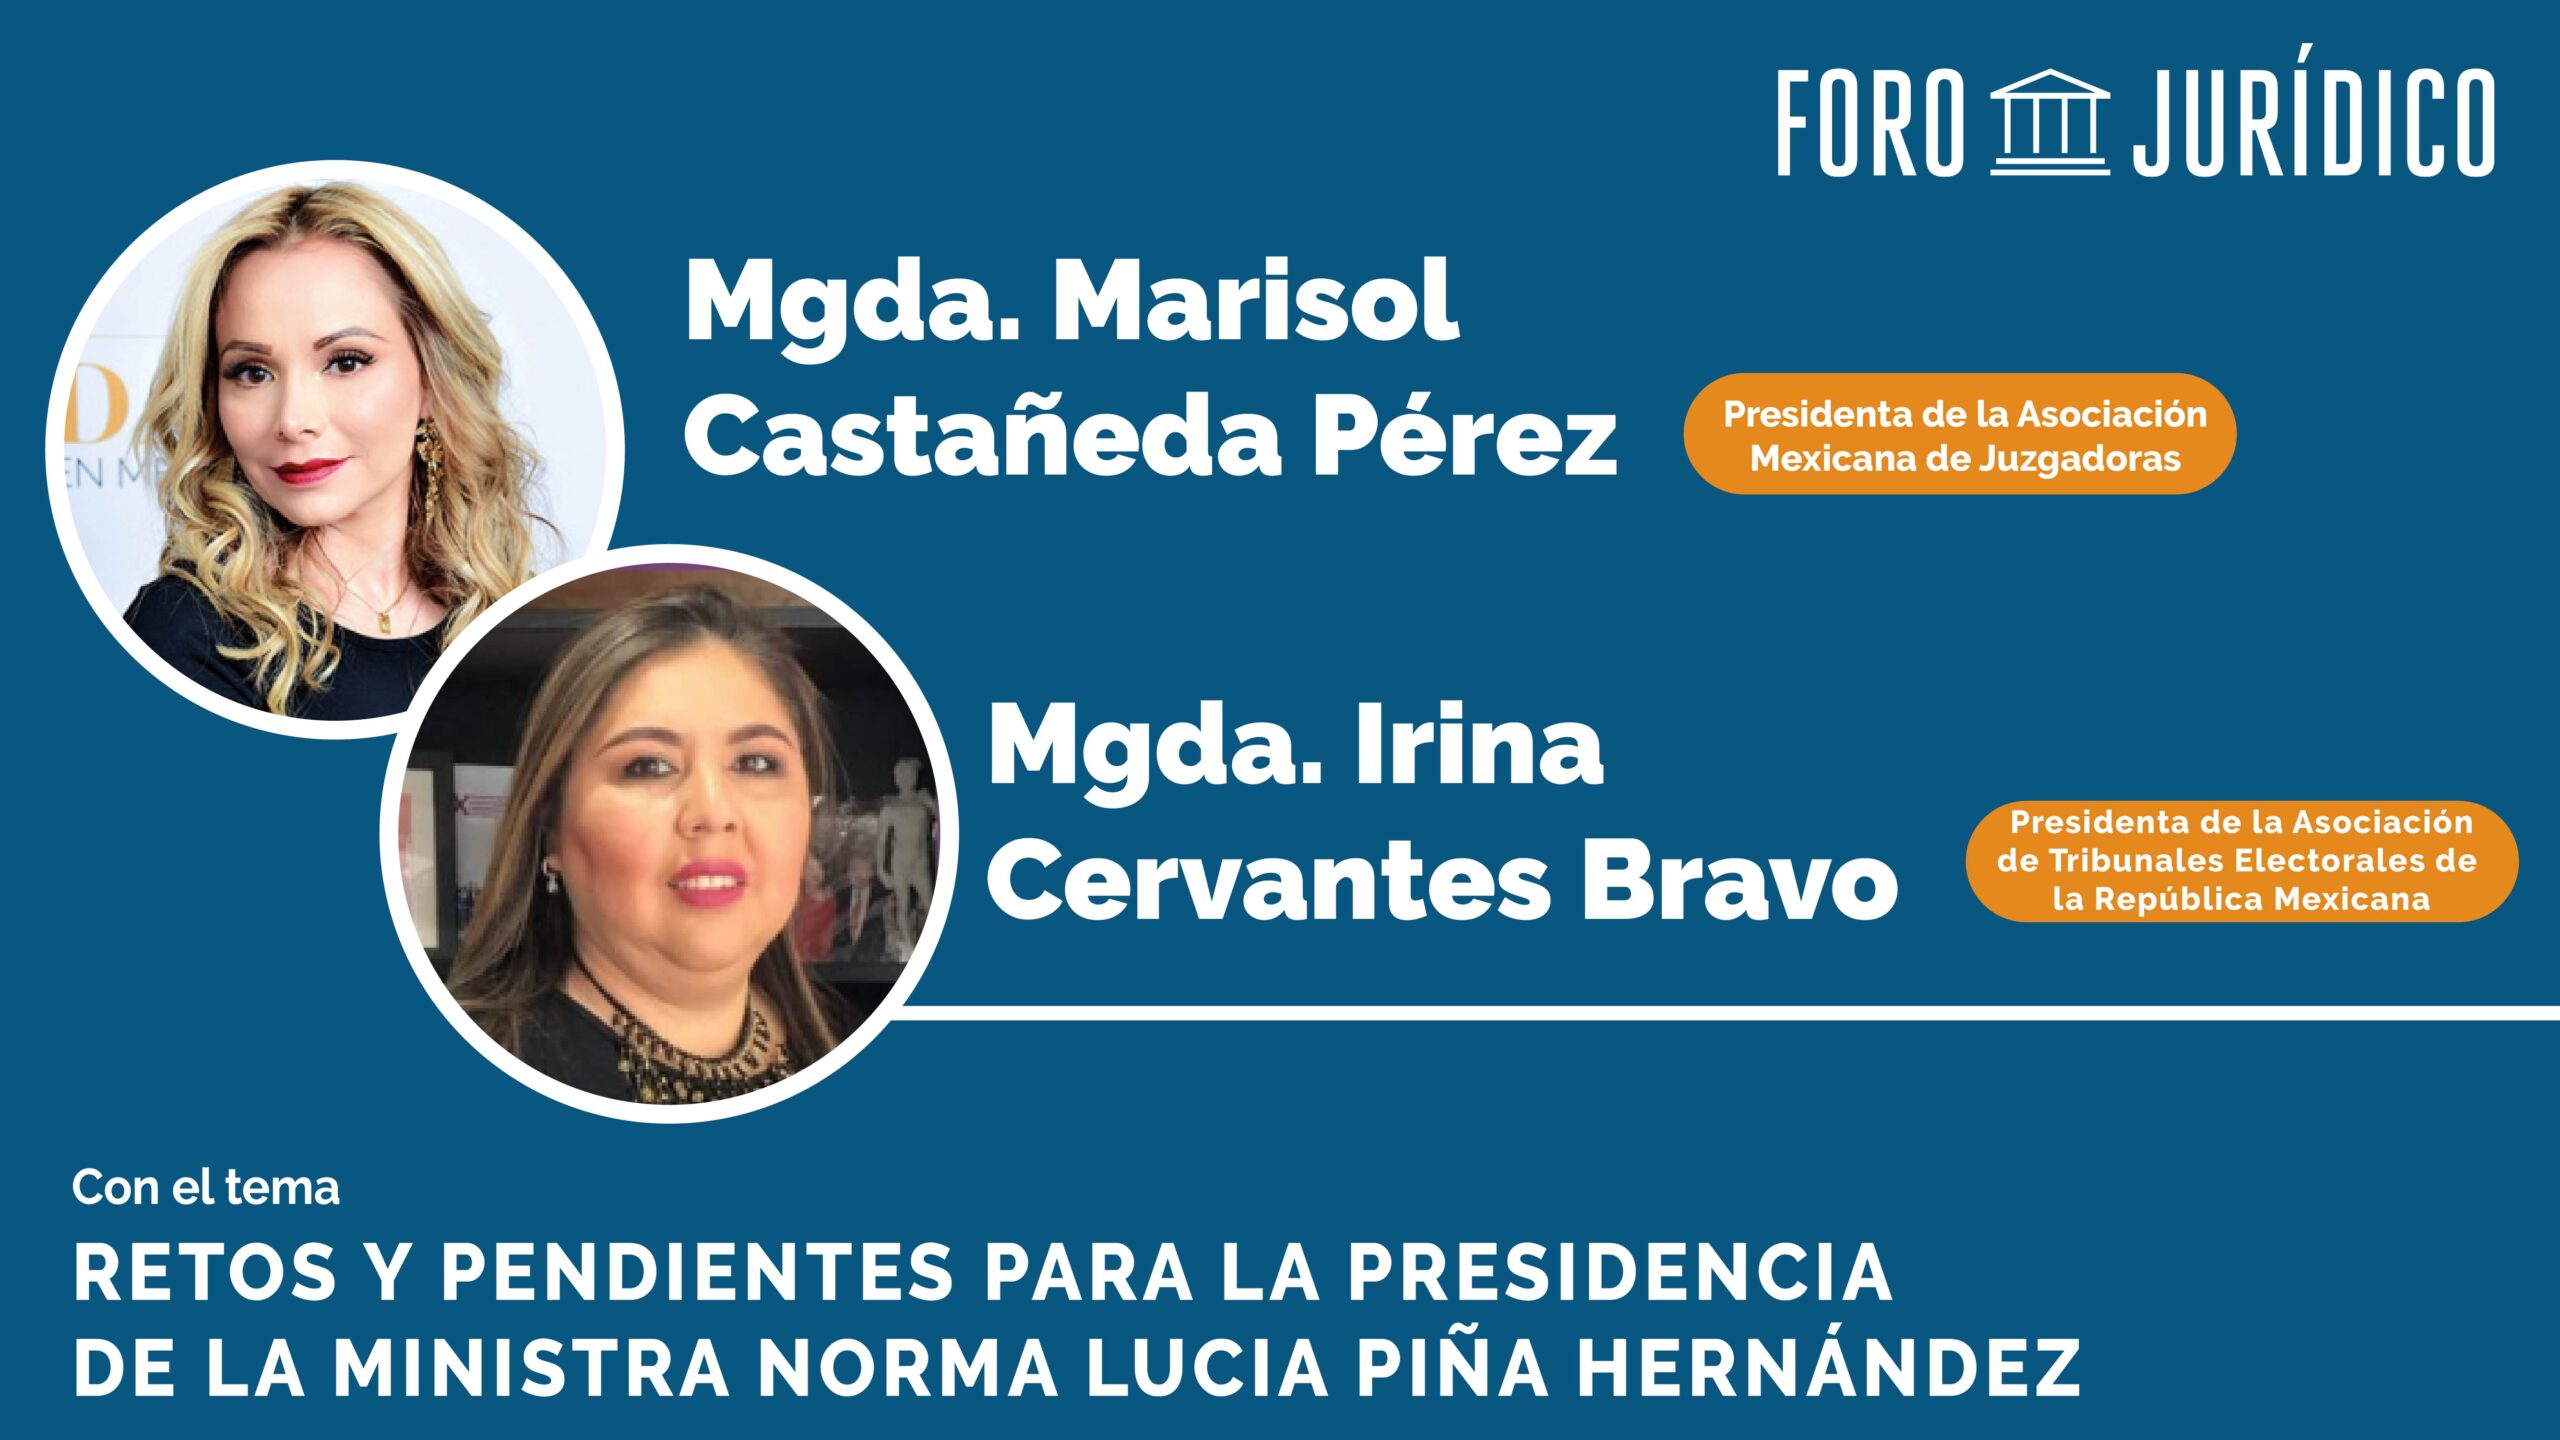 foro jurídico Retos y Pendientes para la presidencia de la Ministra Norma Lucía Piña Hernández